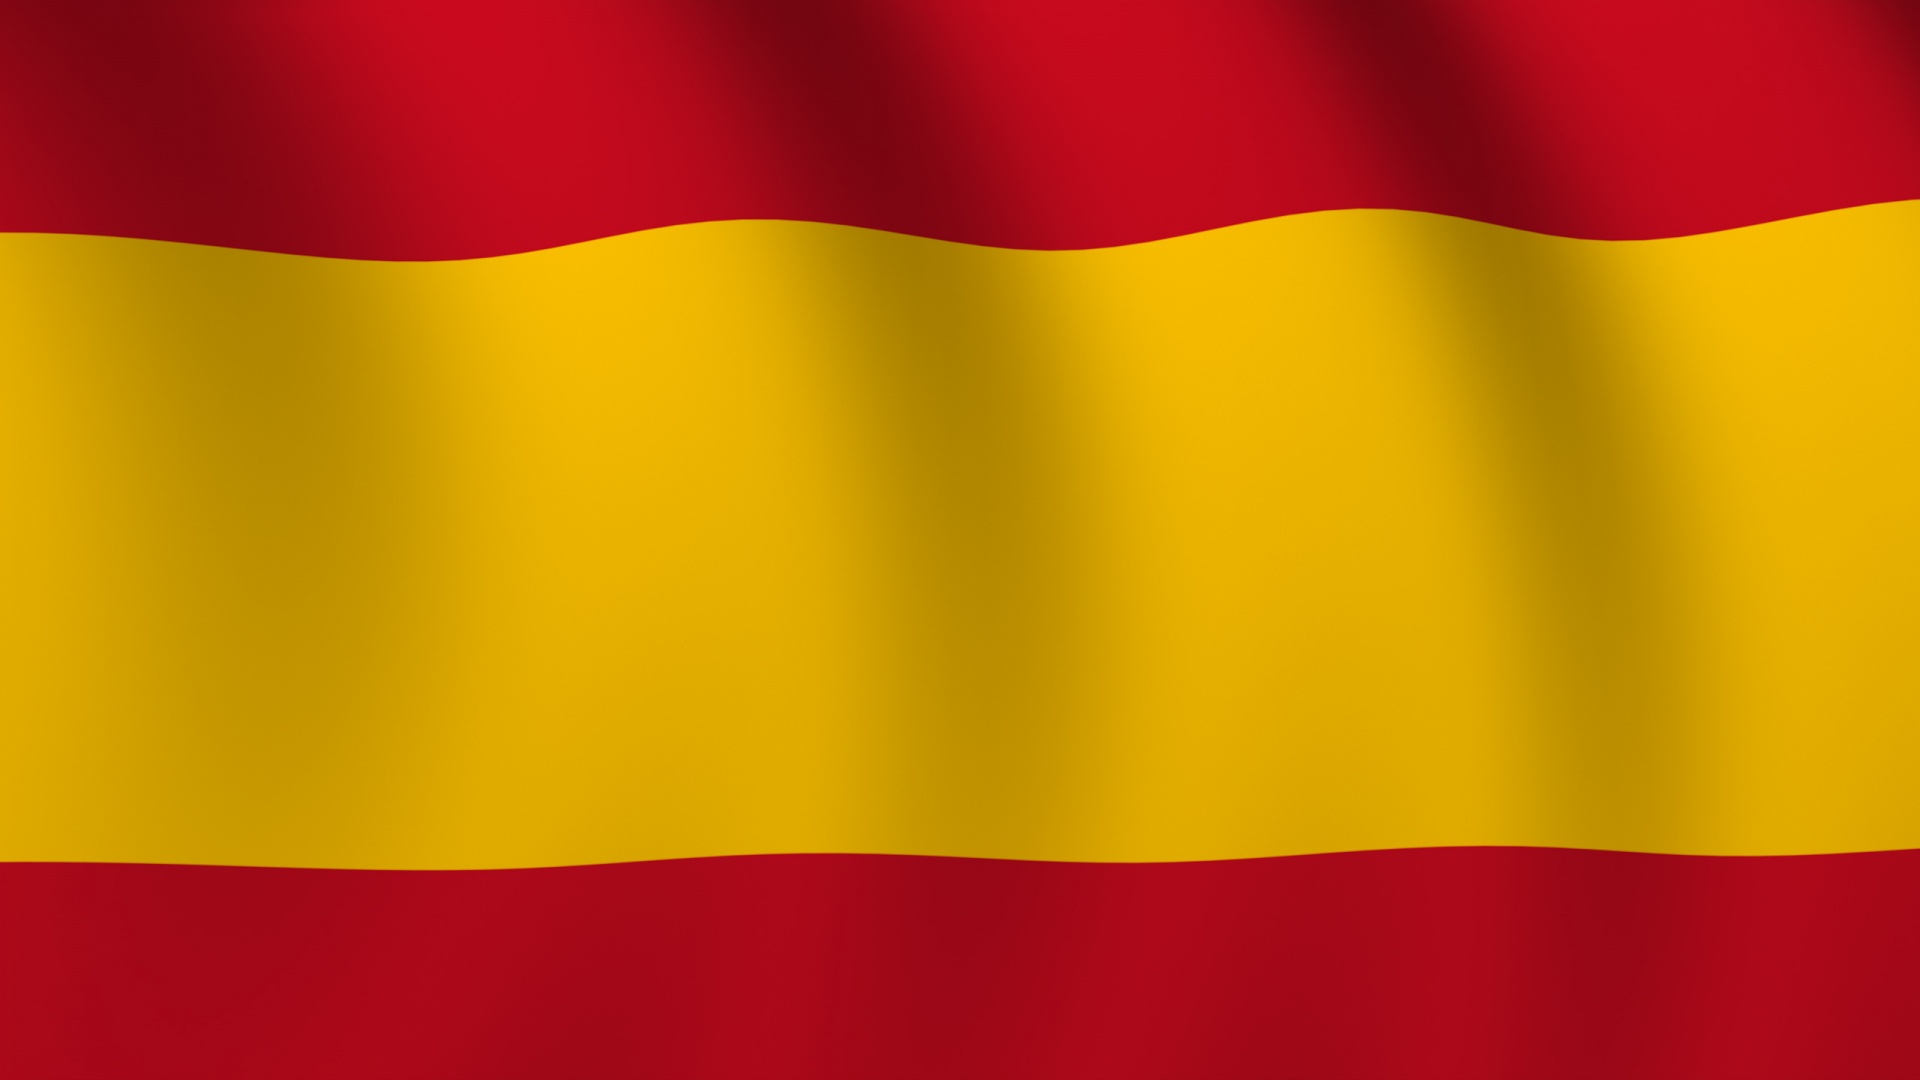 Spanish Flag Wallpaper - WallpaperSafari